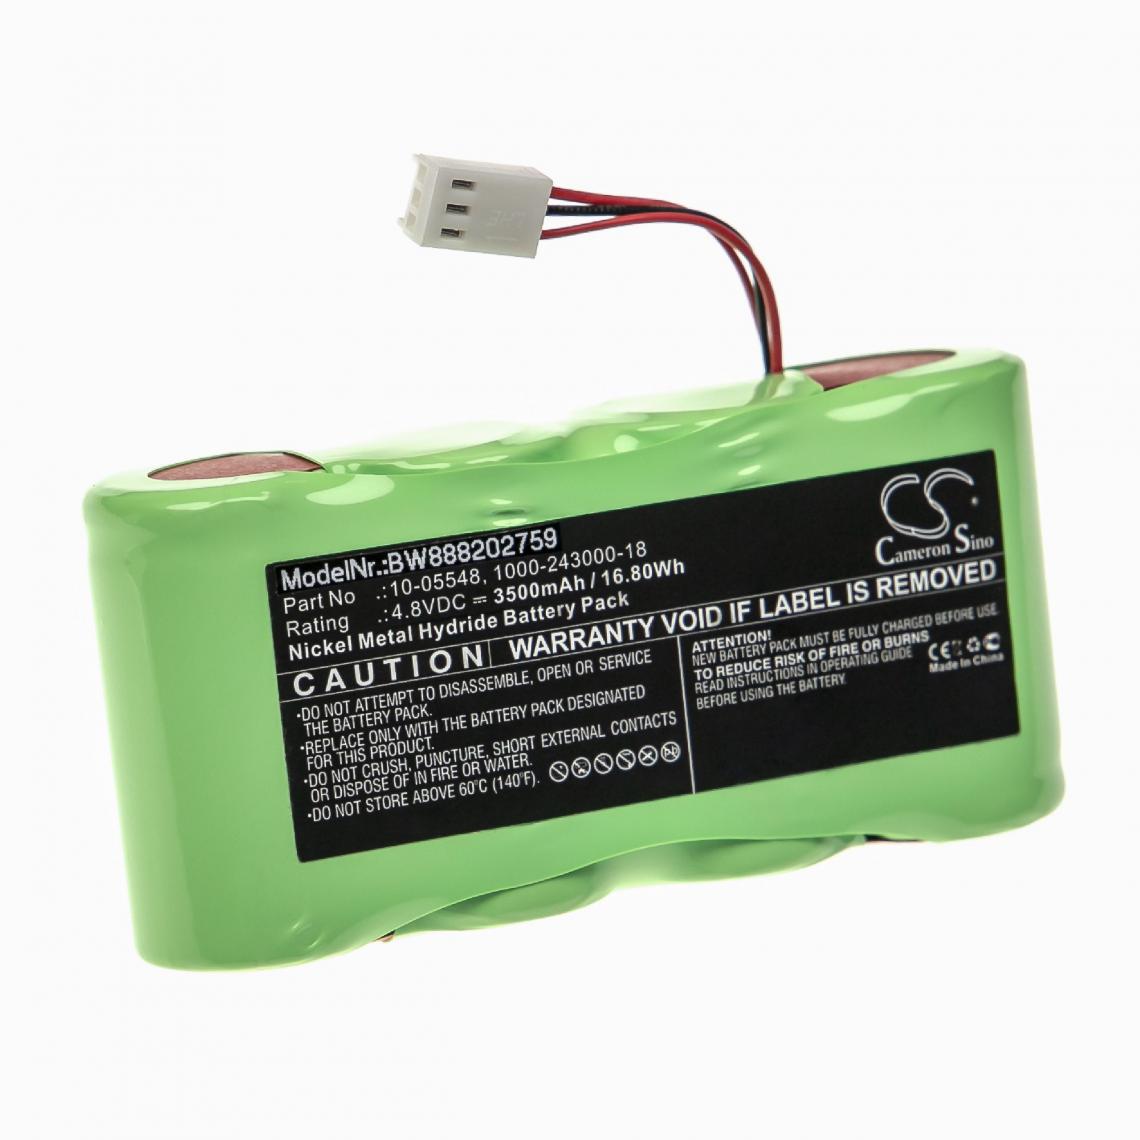 Vhbw - vhbw Batterie remplacement pour Geo / Rotationslaser 1000-243000-18, 10-05548 pour outil de mesure (3500mAh, 4,8V, NiMH) - Piles rechargeables